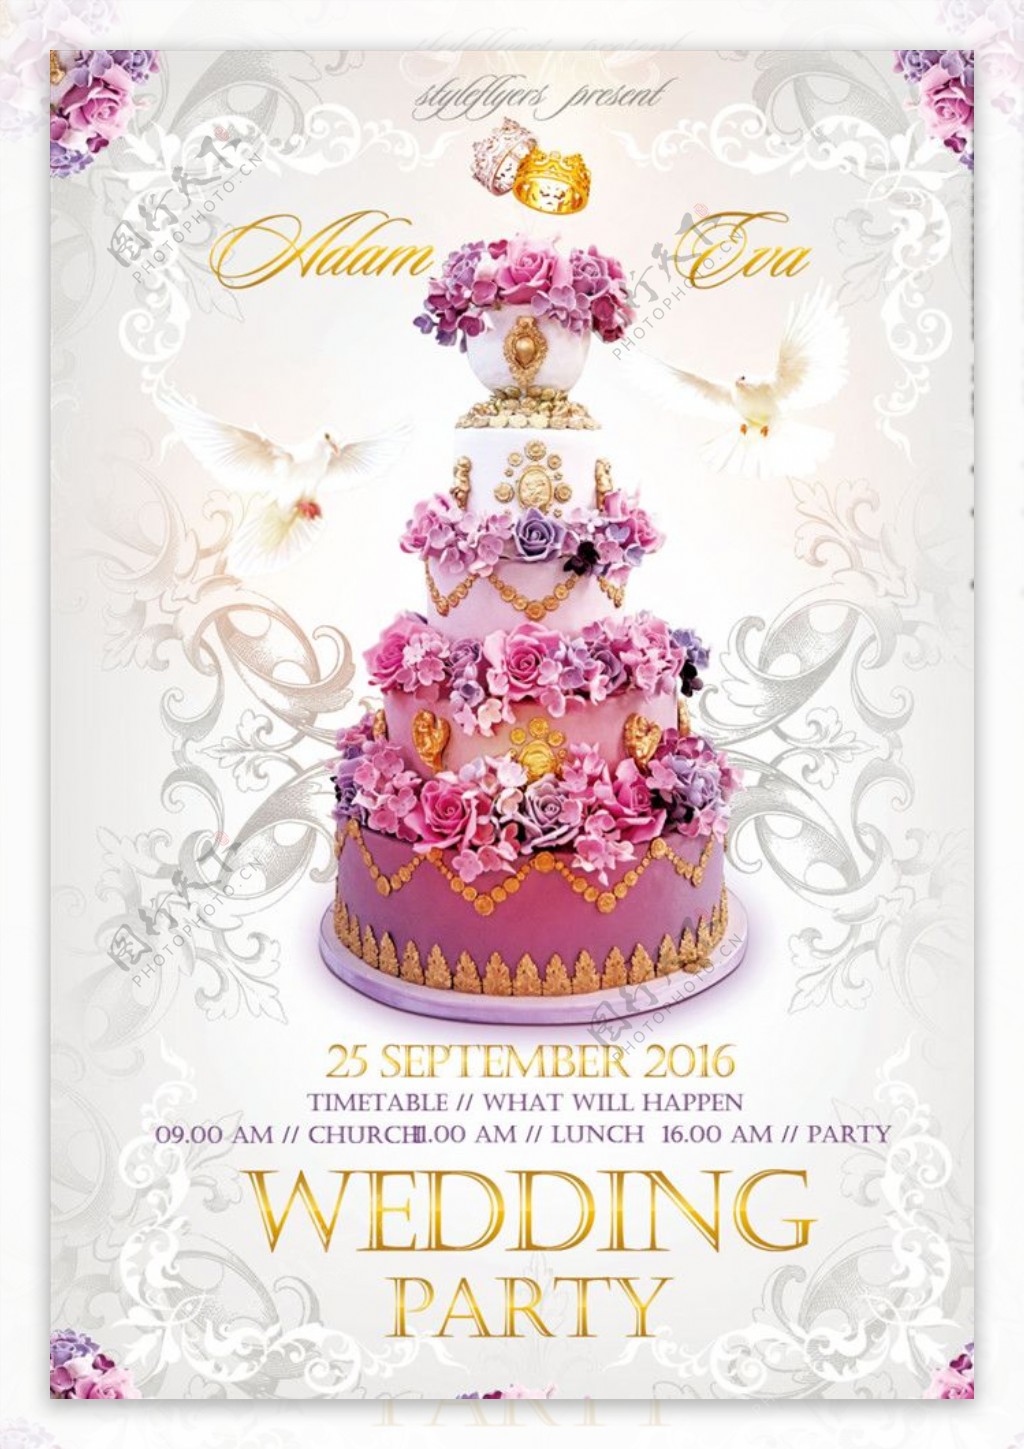 浪漫蛋糕婚礼海报